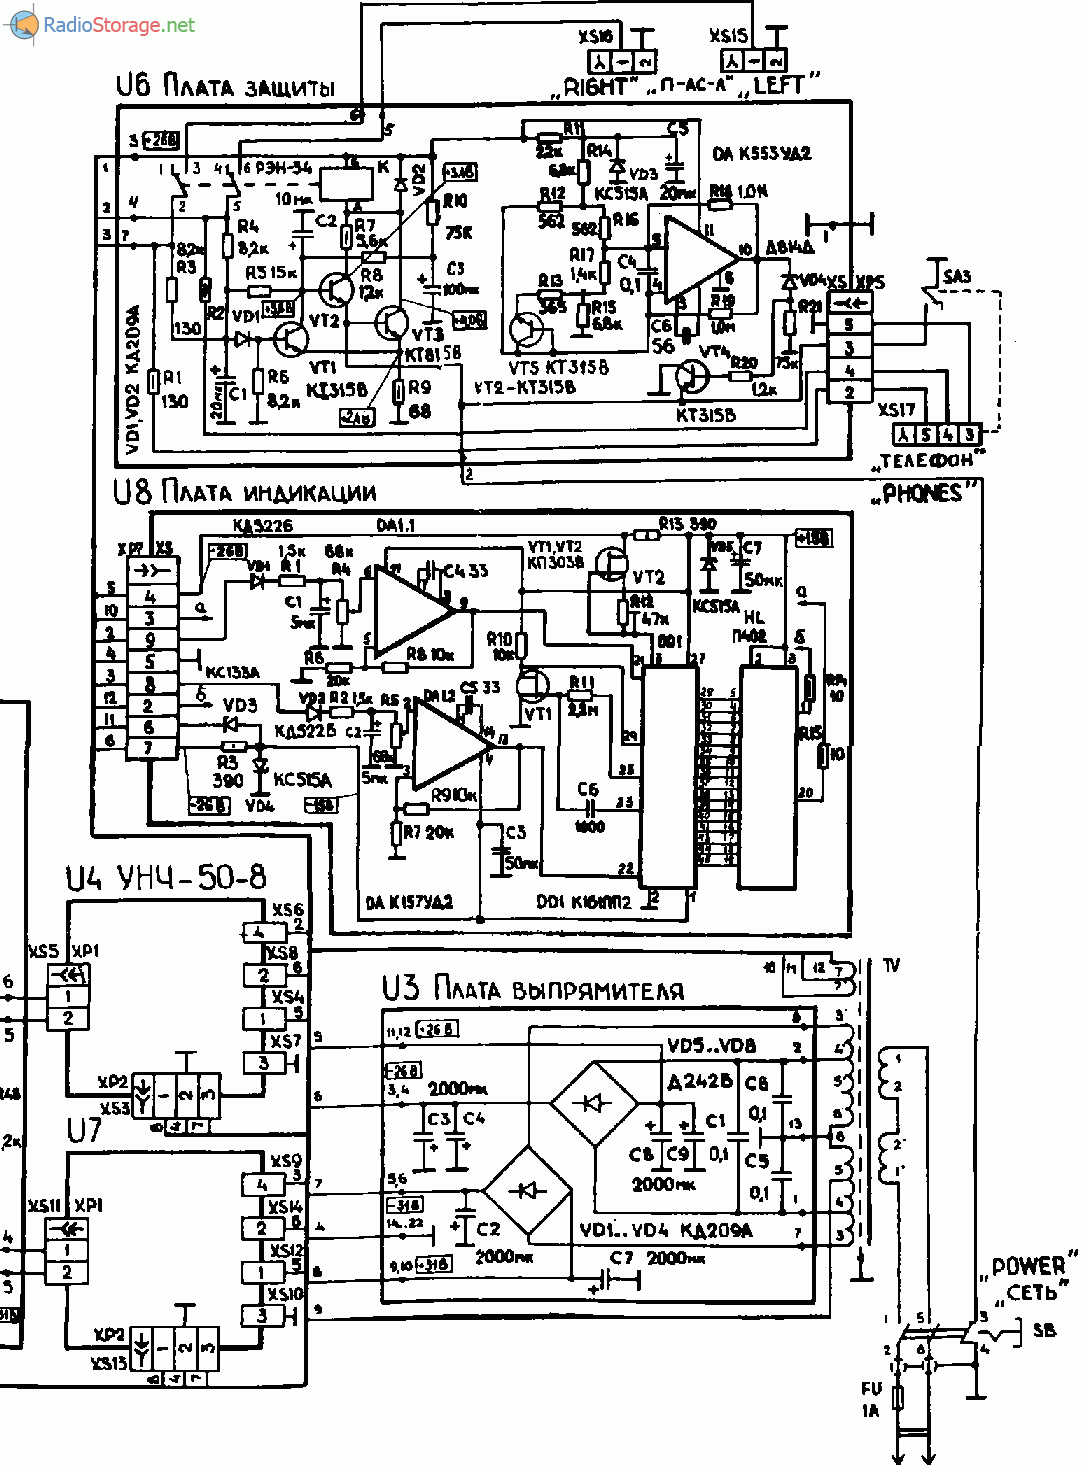 Усилитель Радиотехника У-101 (Radiotehnika U-101), схема